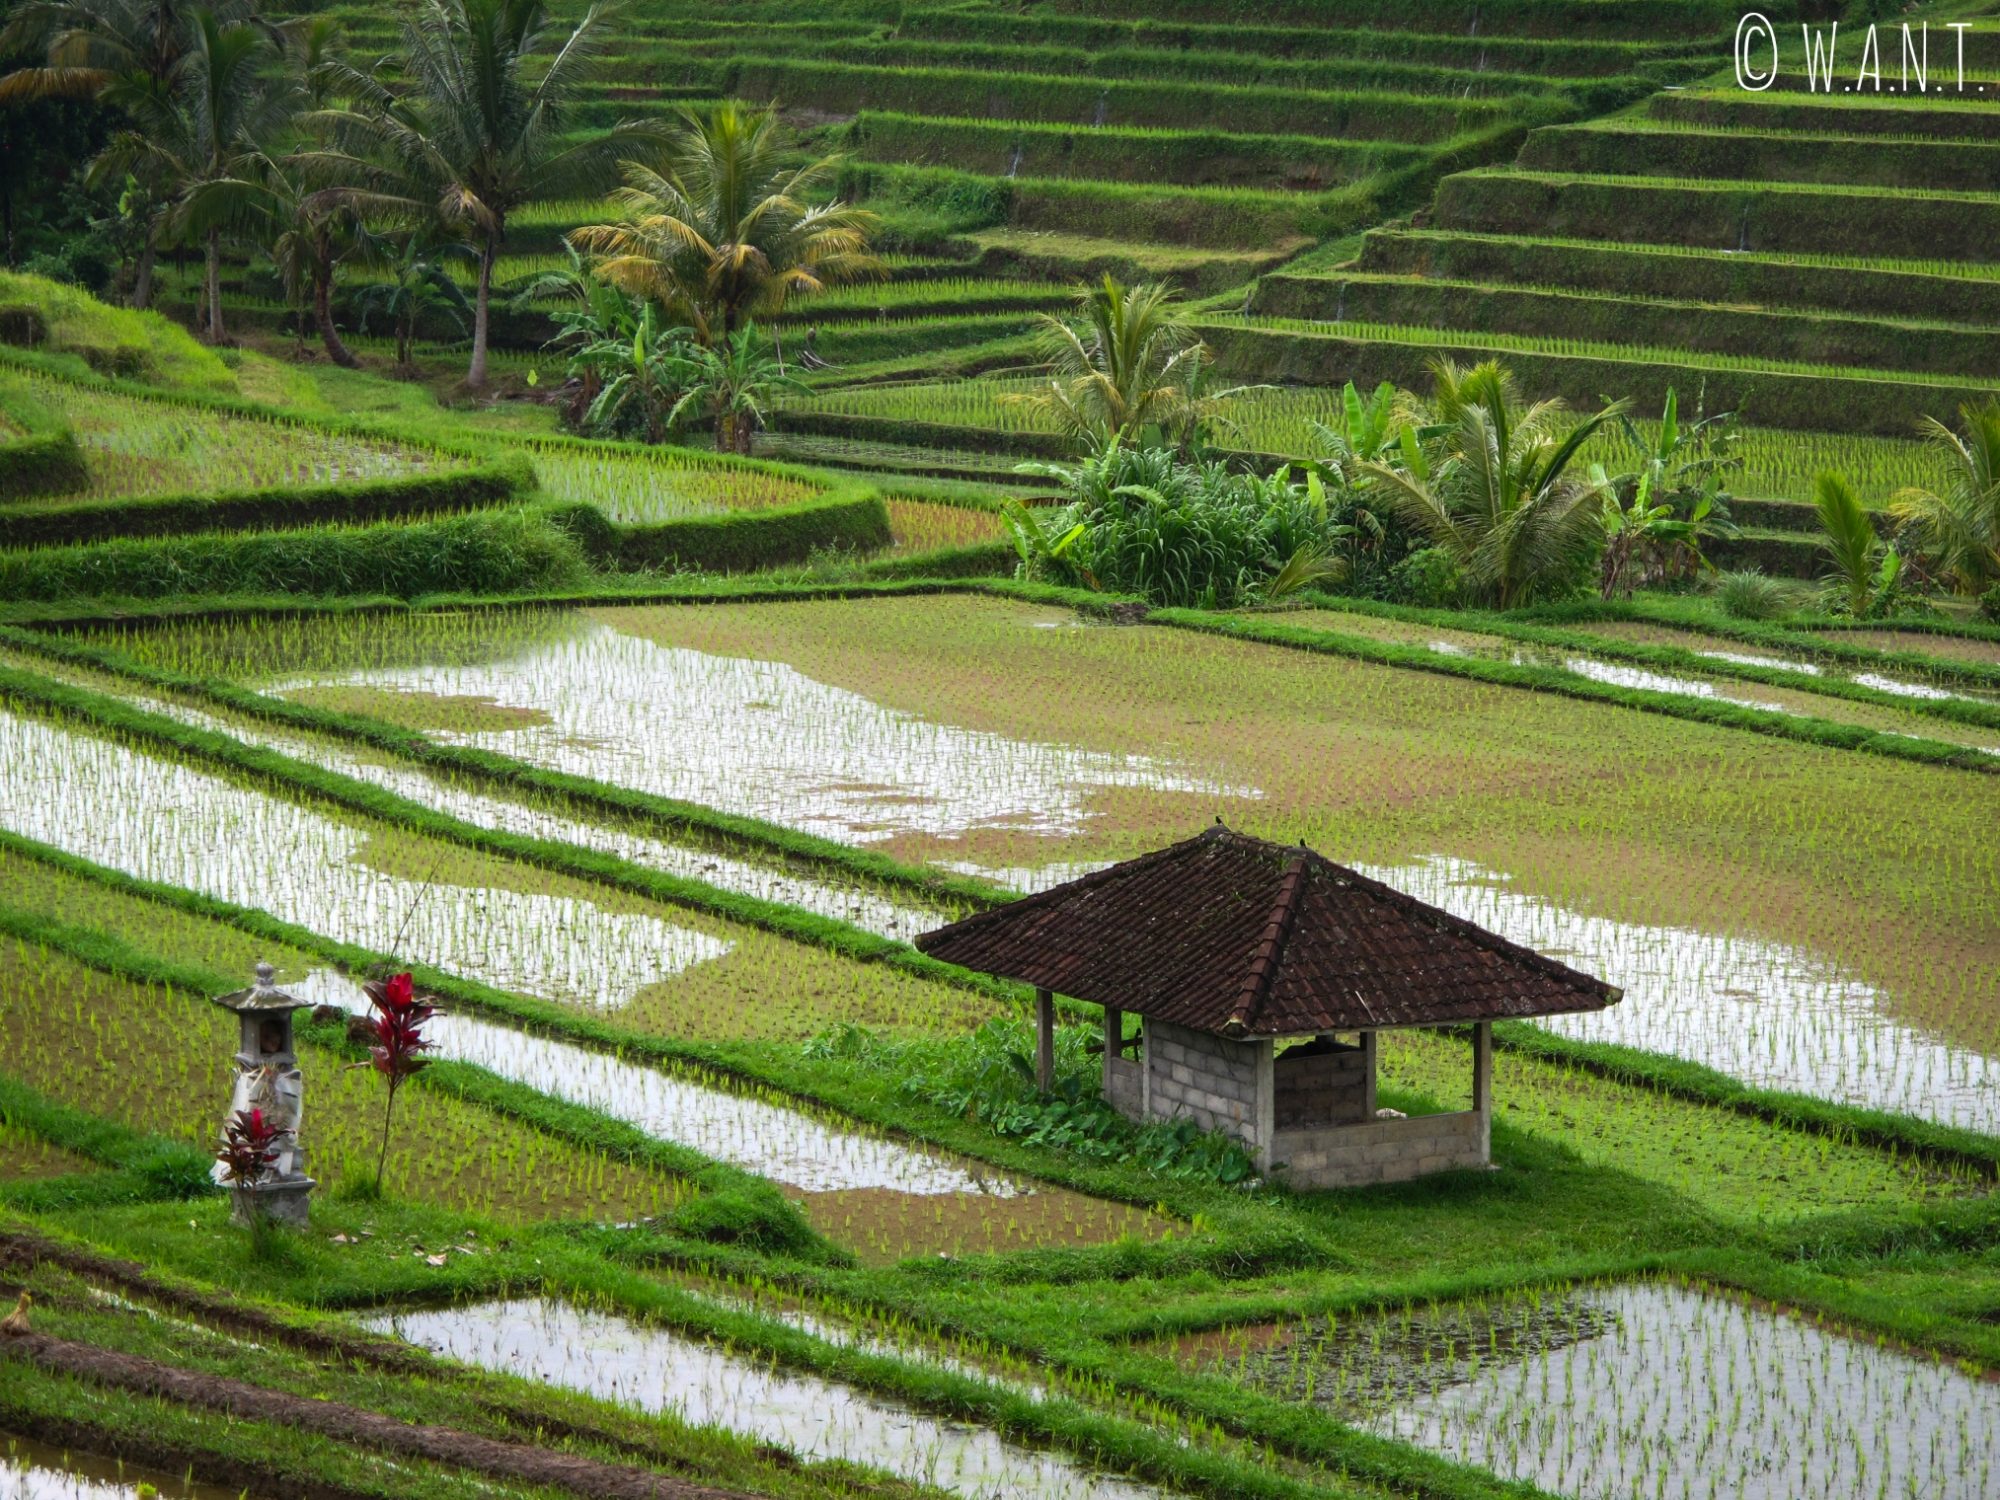 Les rizières de Jatiluwih à Bali sont classées au patrimoine mondial de l'UNESCO